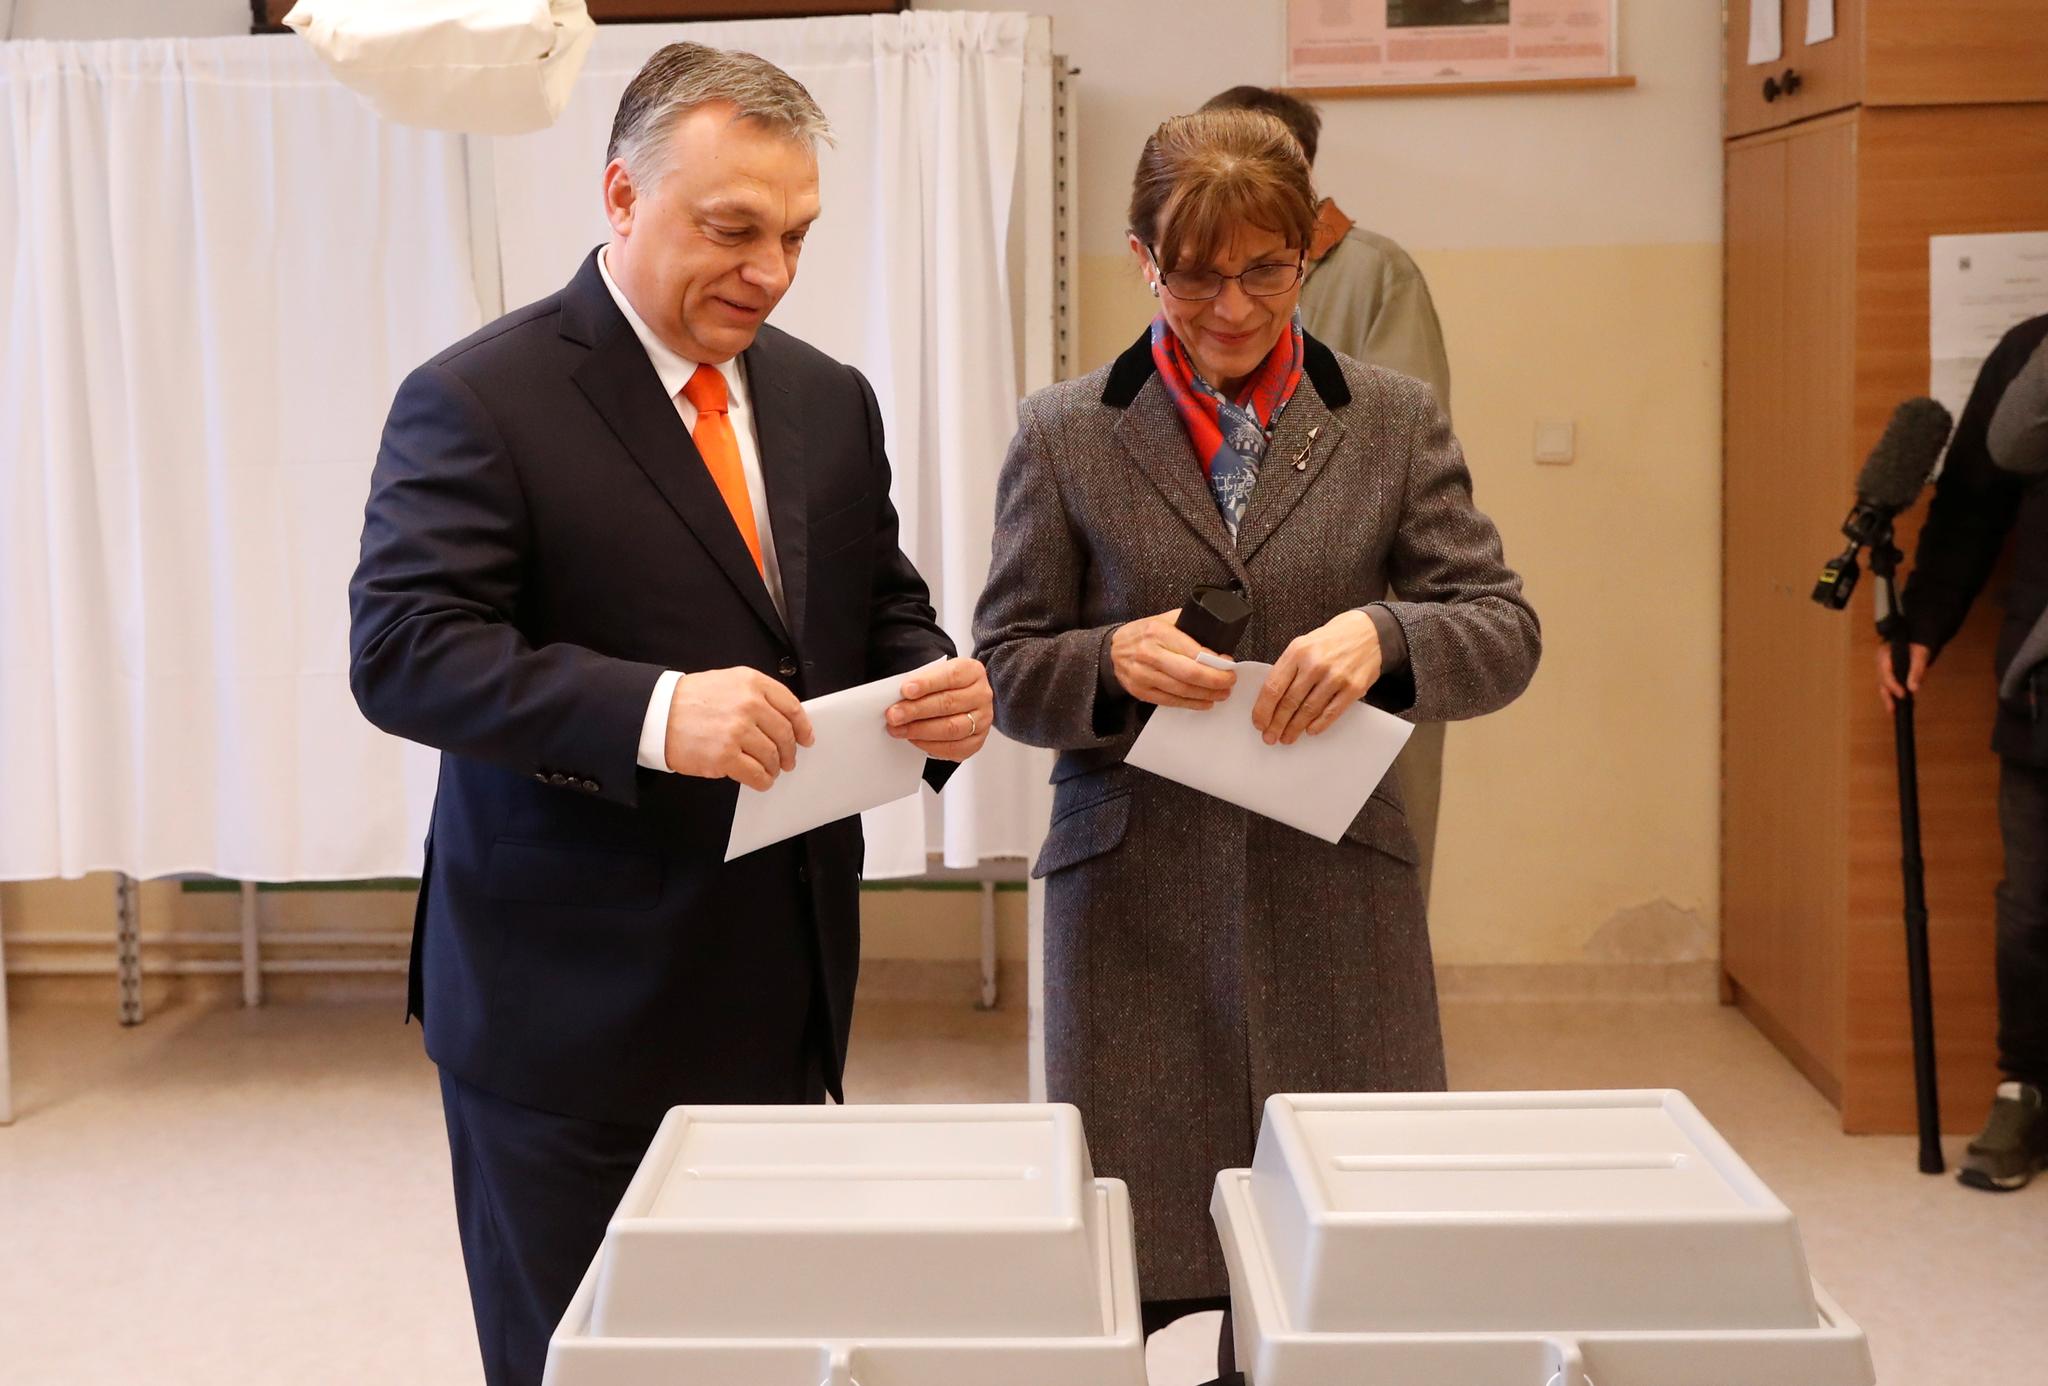  Viktor Orbán og kona Aniko Levai avga sin stemme i formiddag. Valgdeltagelsen så da ut til å bli høyere enn sist.  